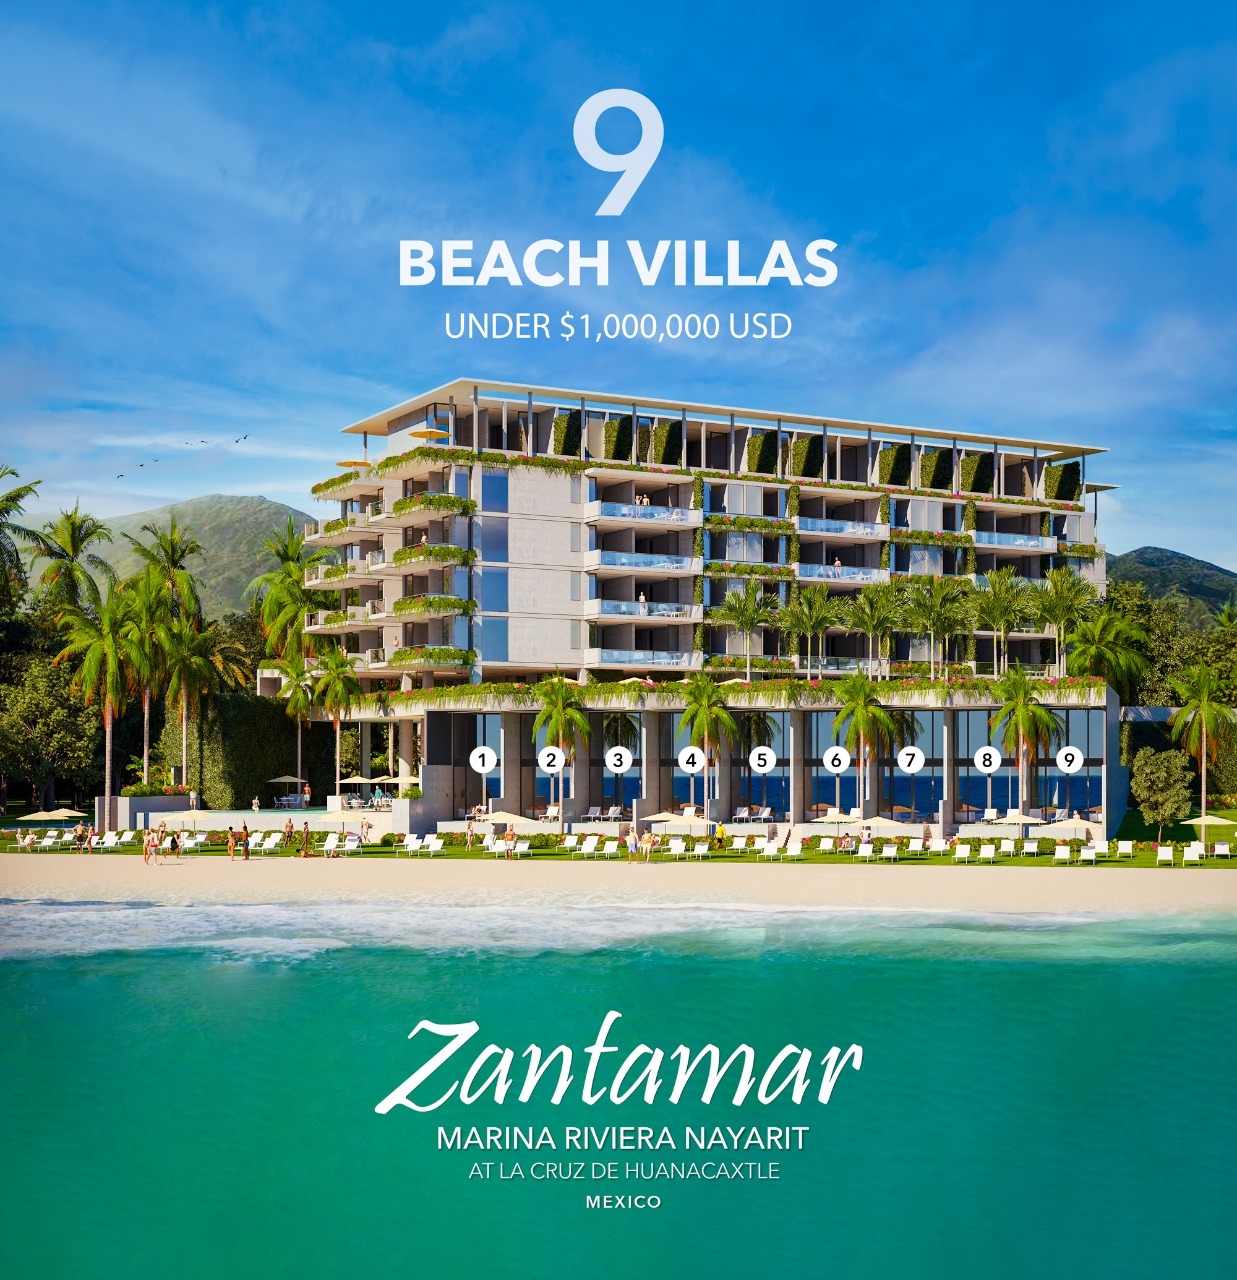 Zantamar beach villas - Puerto Vallarta real estate - La Cruz de Huanacaxtle- Punta de Mita, Mexico